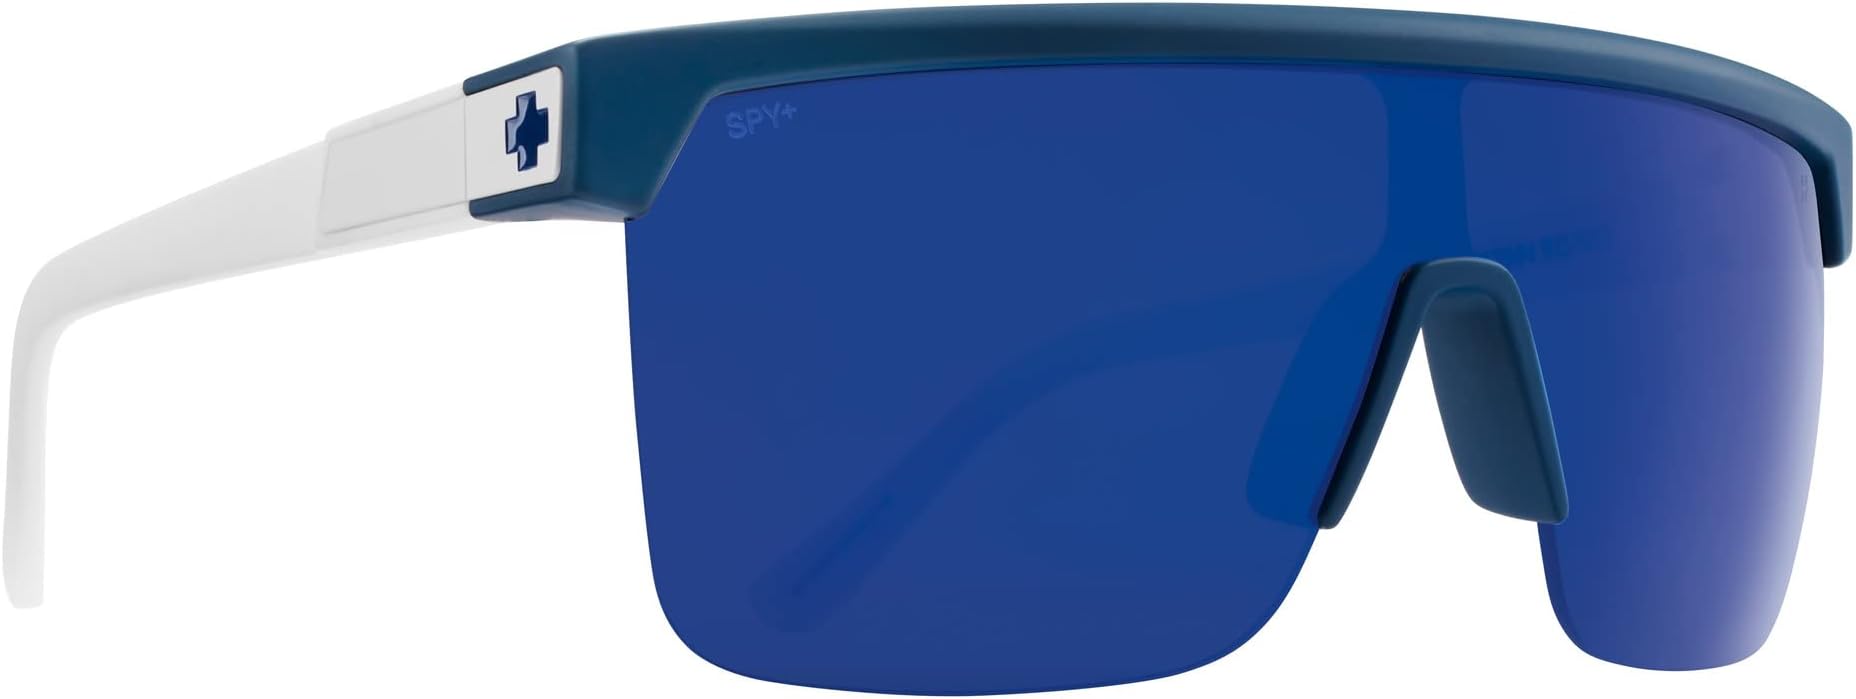 цена Солнцезащитные очки Flynn 5050 Spy Optic, цвет Matte Blue Matte White/Happy Gray Green Blue Mirror